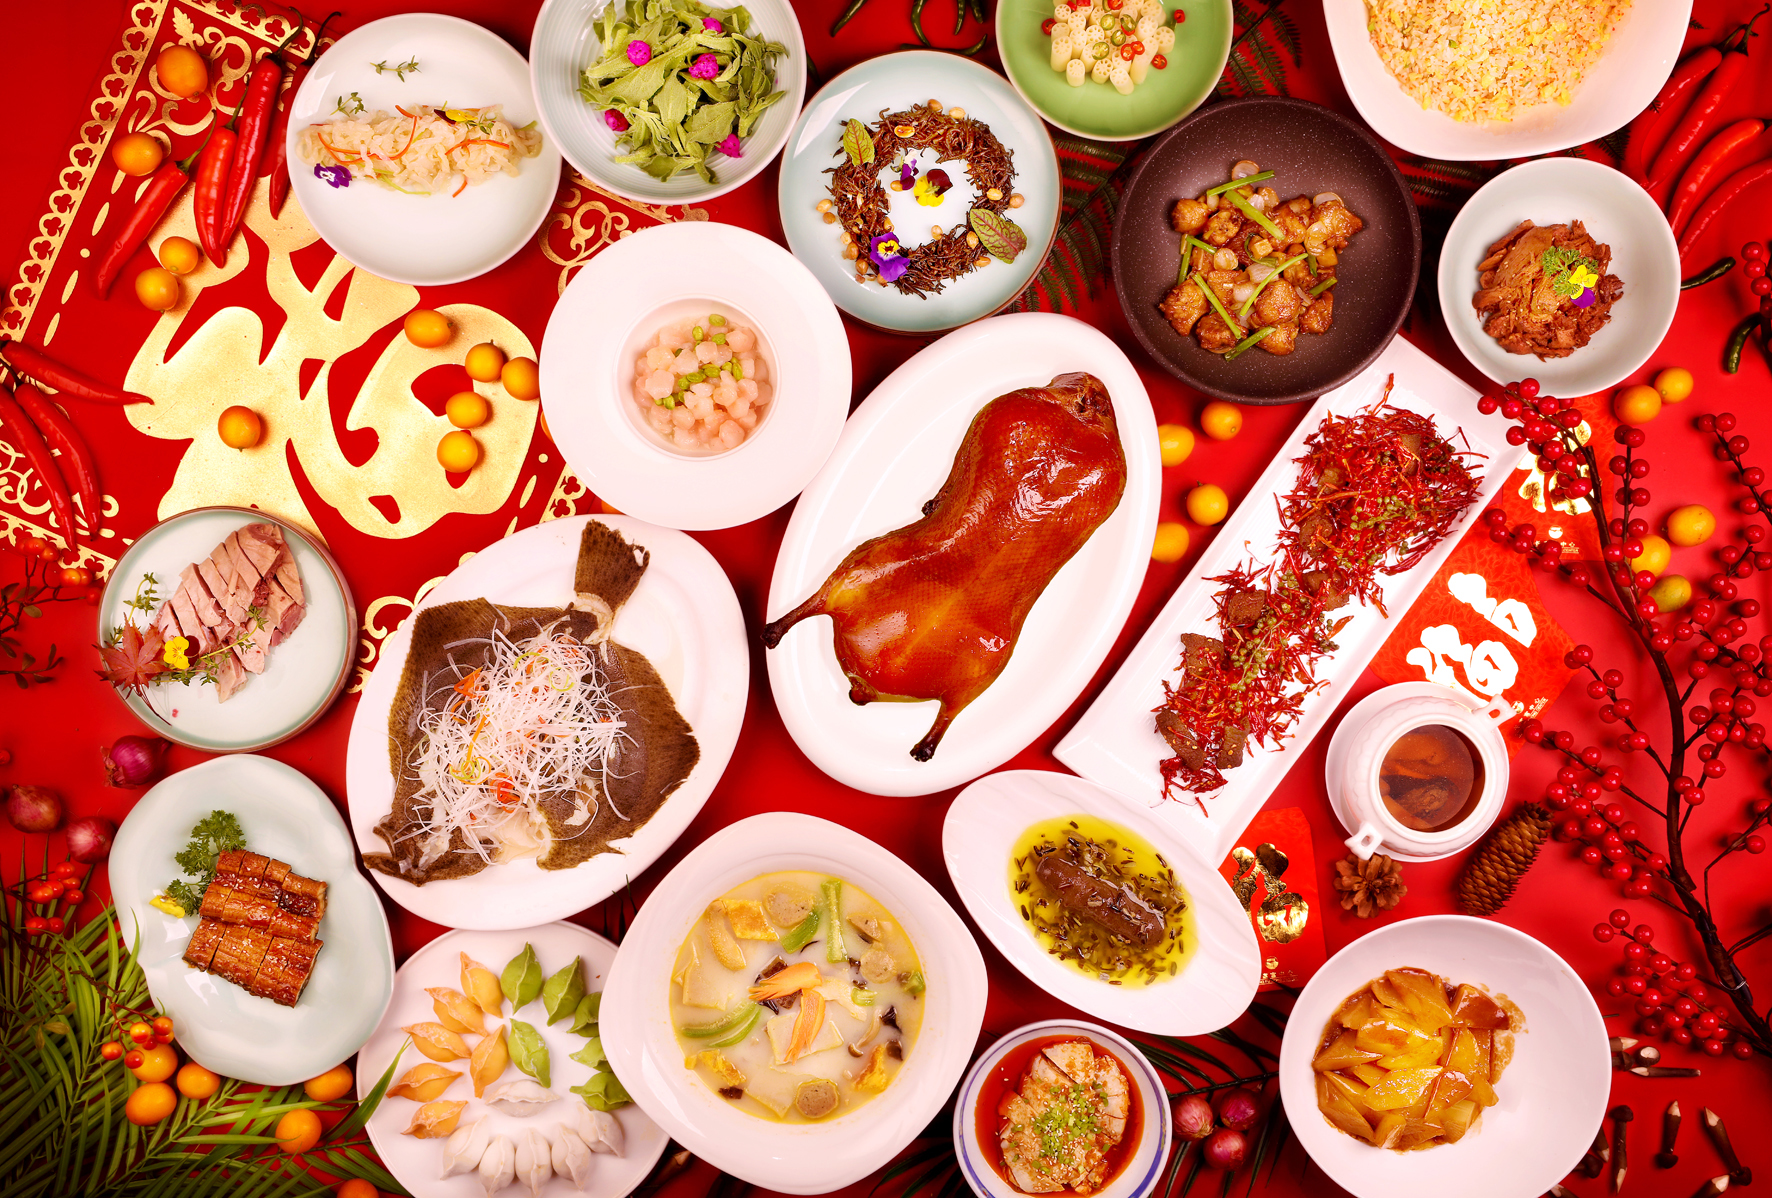 长富宫饭店牡丹苑中餐厅推出的年夜饭里,压轴大戏便是"牡丹苑"传统